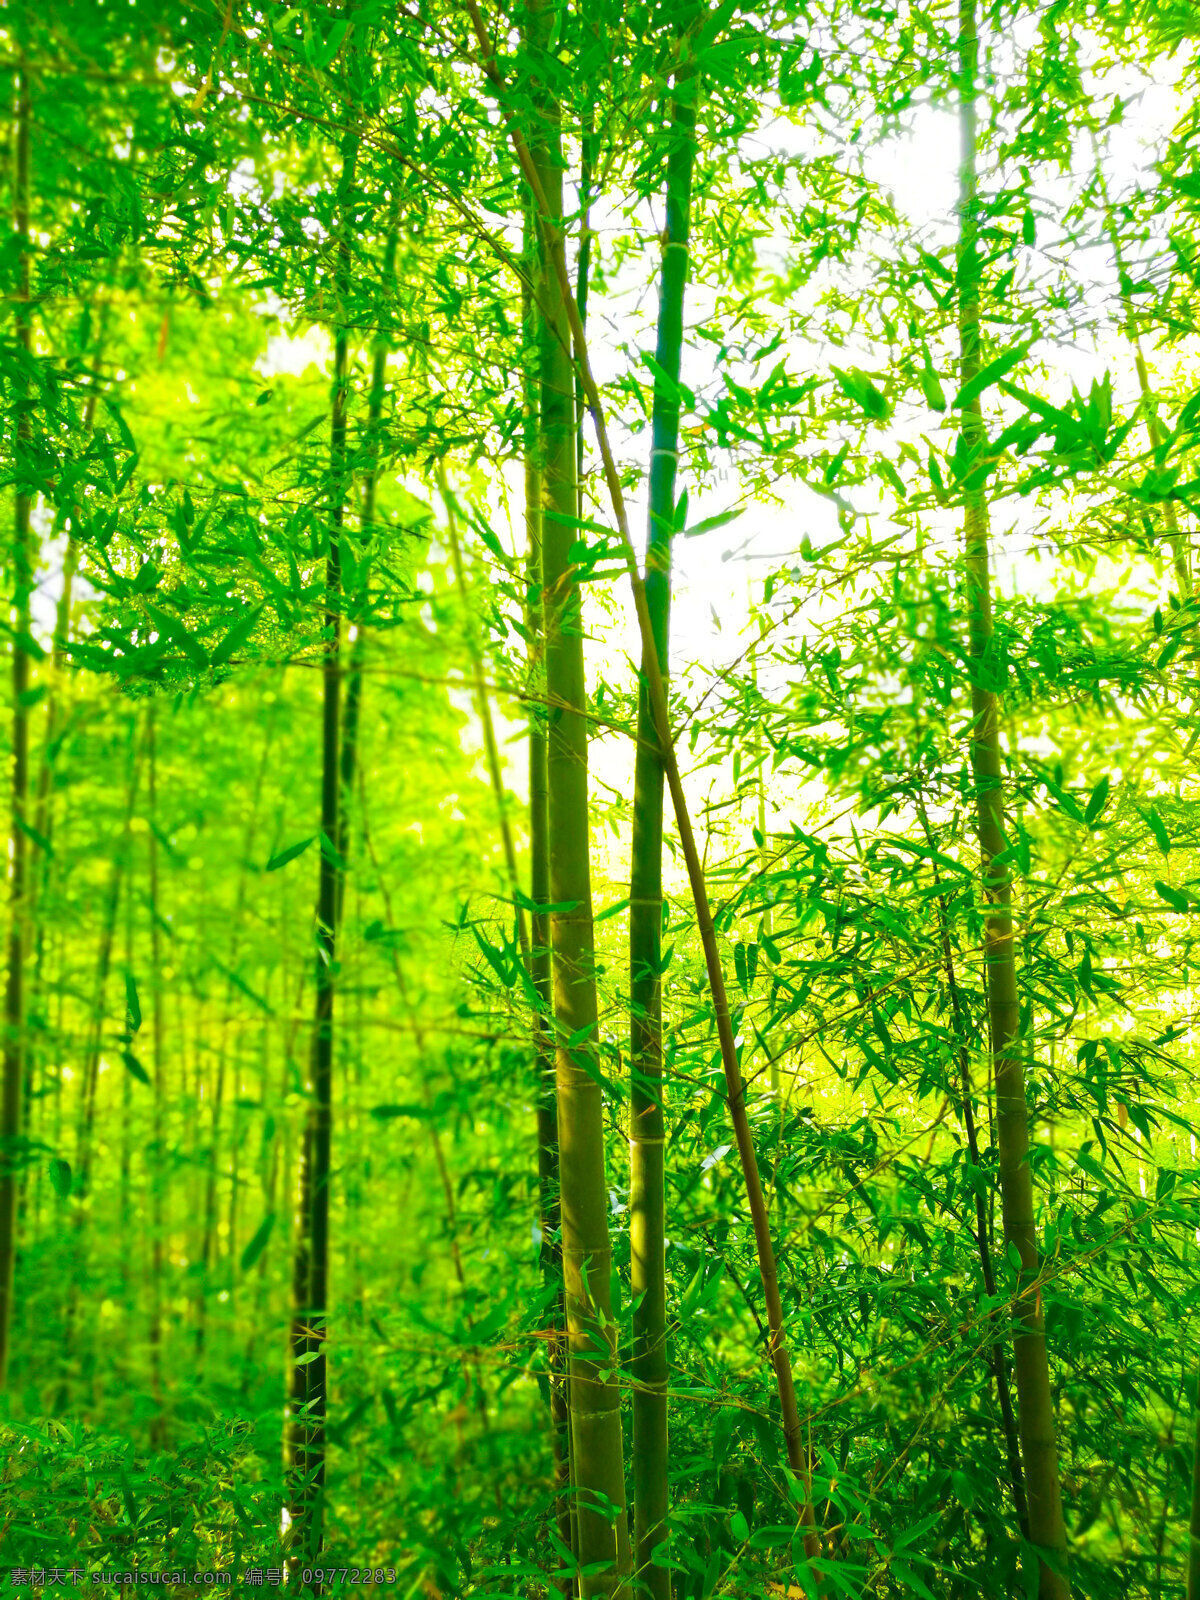 竹 竹照片 竹子照片 主杆 竹叶 竹林 竹林照片 植物 植物照片 竹子背景照片 树叶 生物世界 树木树叶